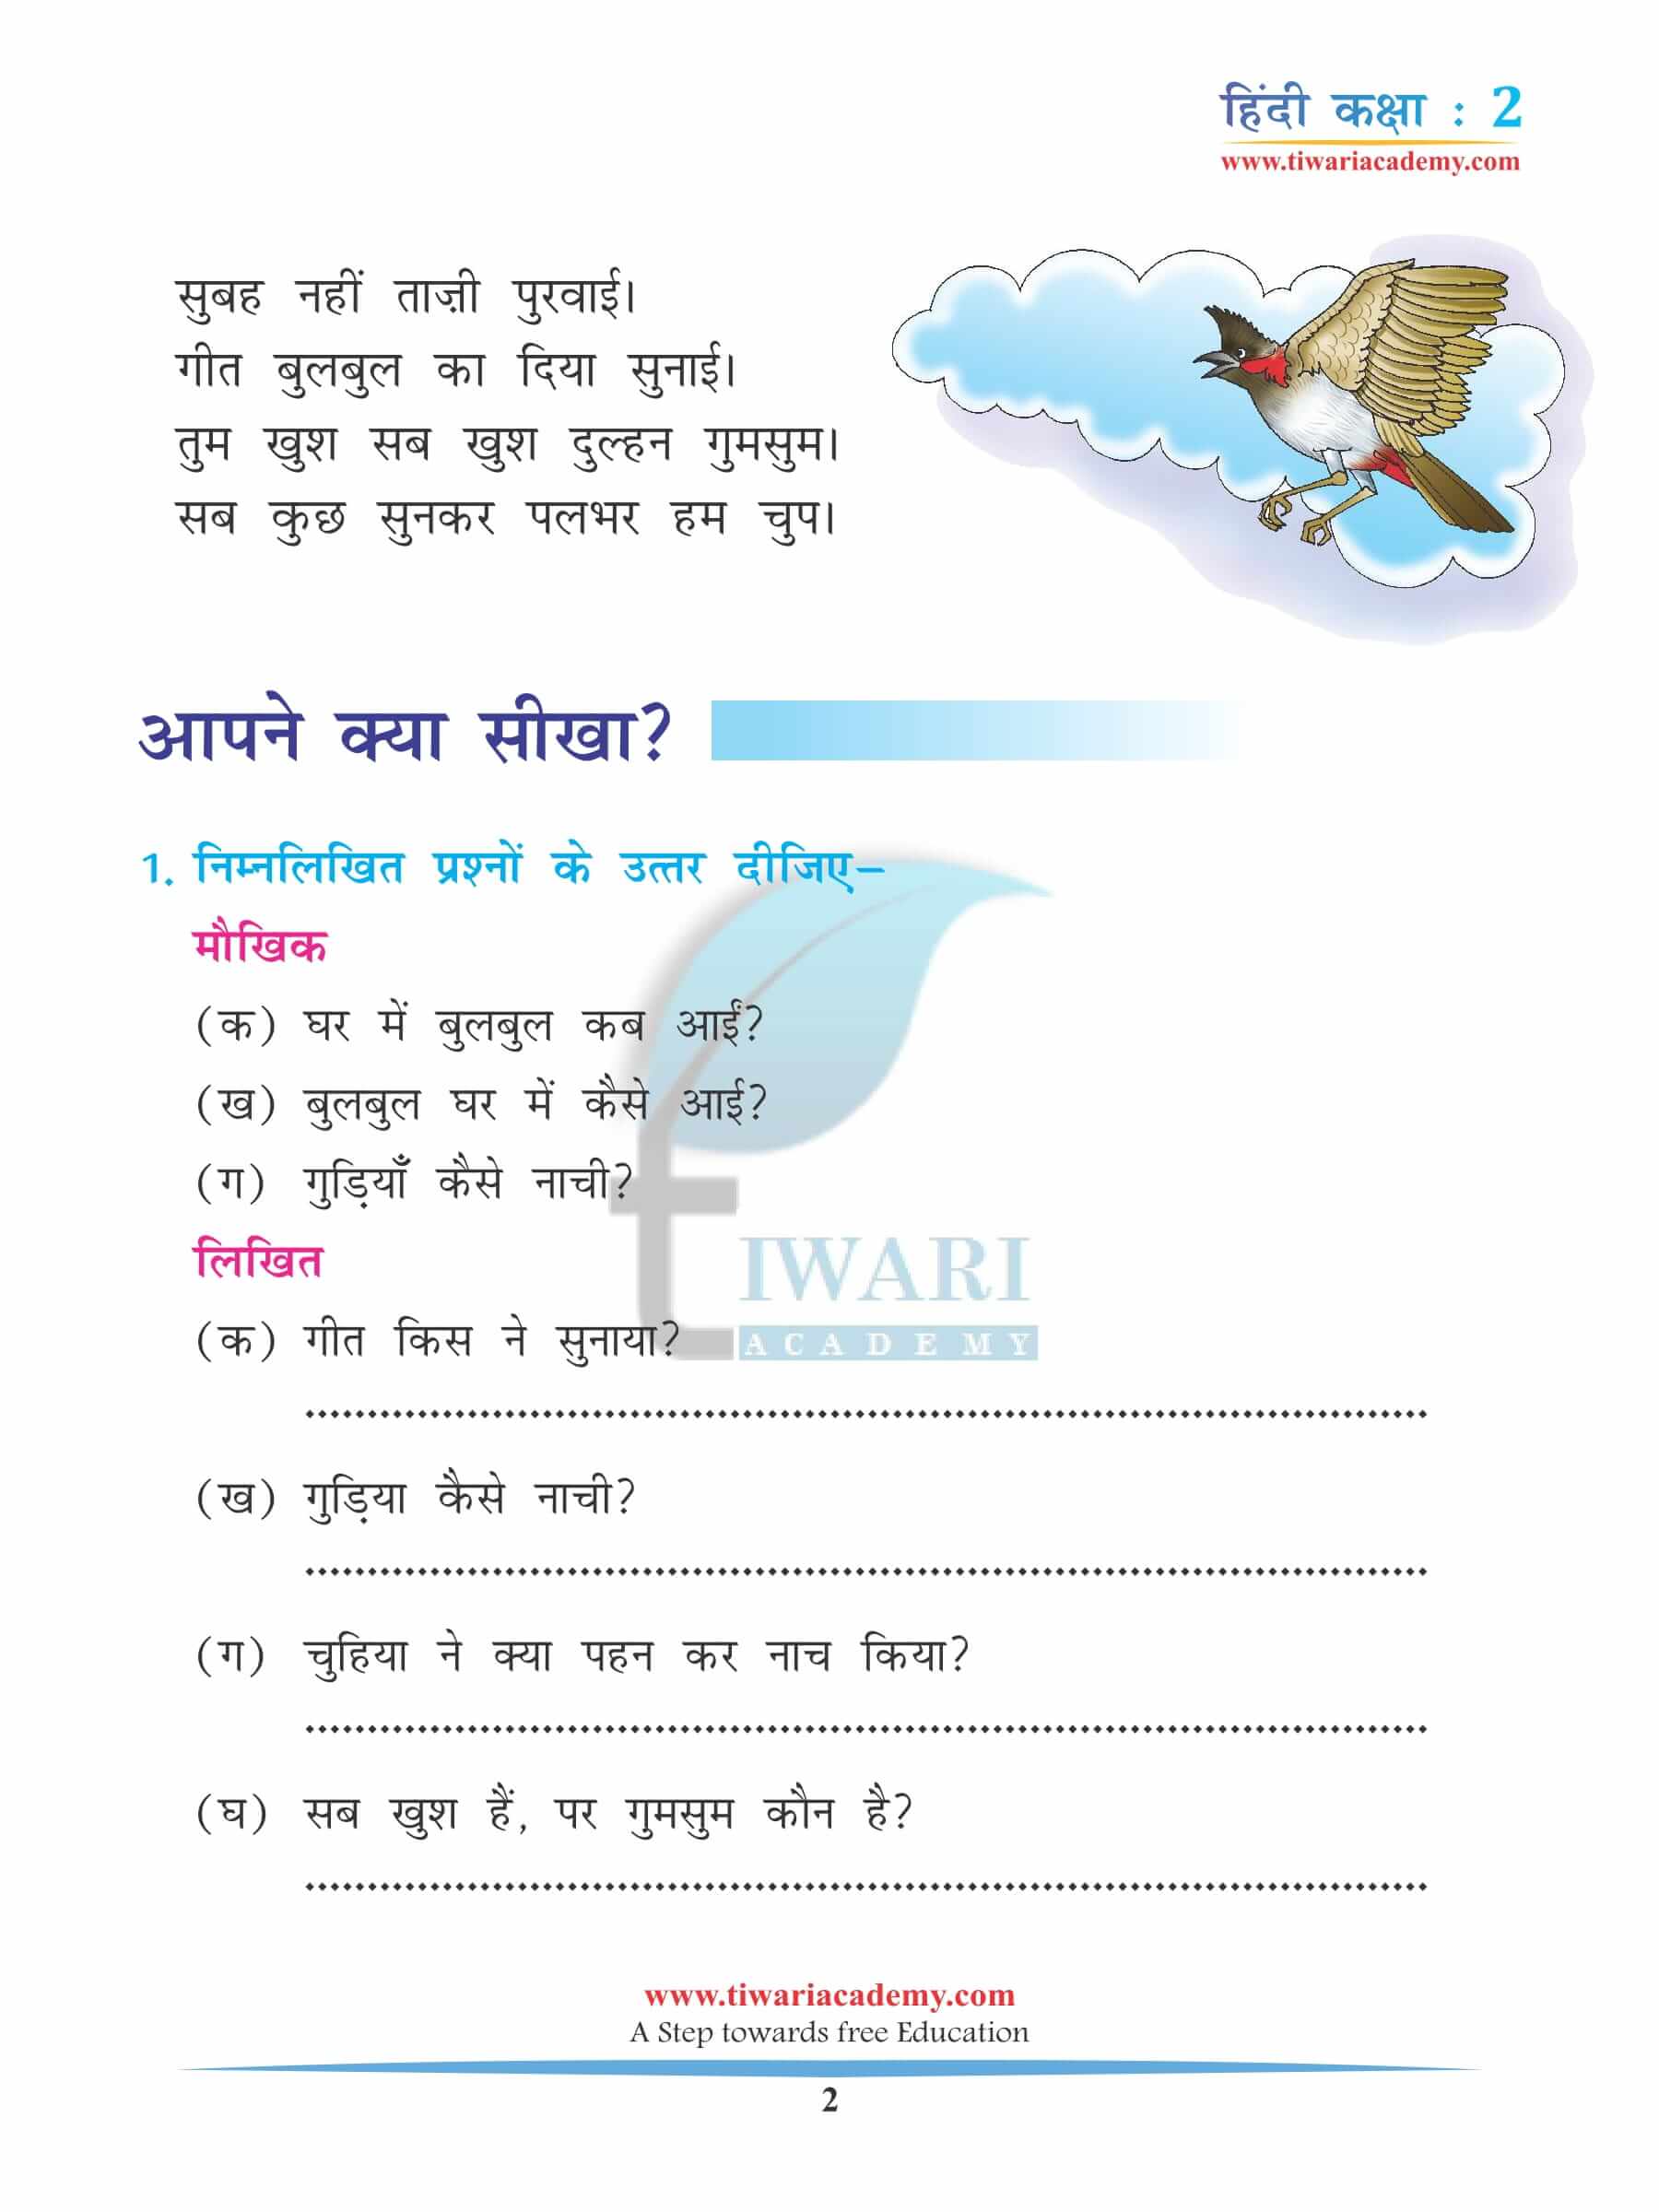 कक्षा 2 हिंदी अध्याय 15 अभ्यास के प्रश्न उत्तर